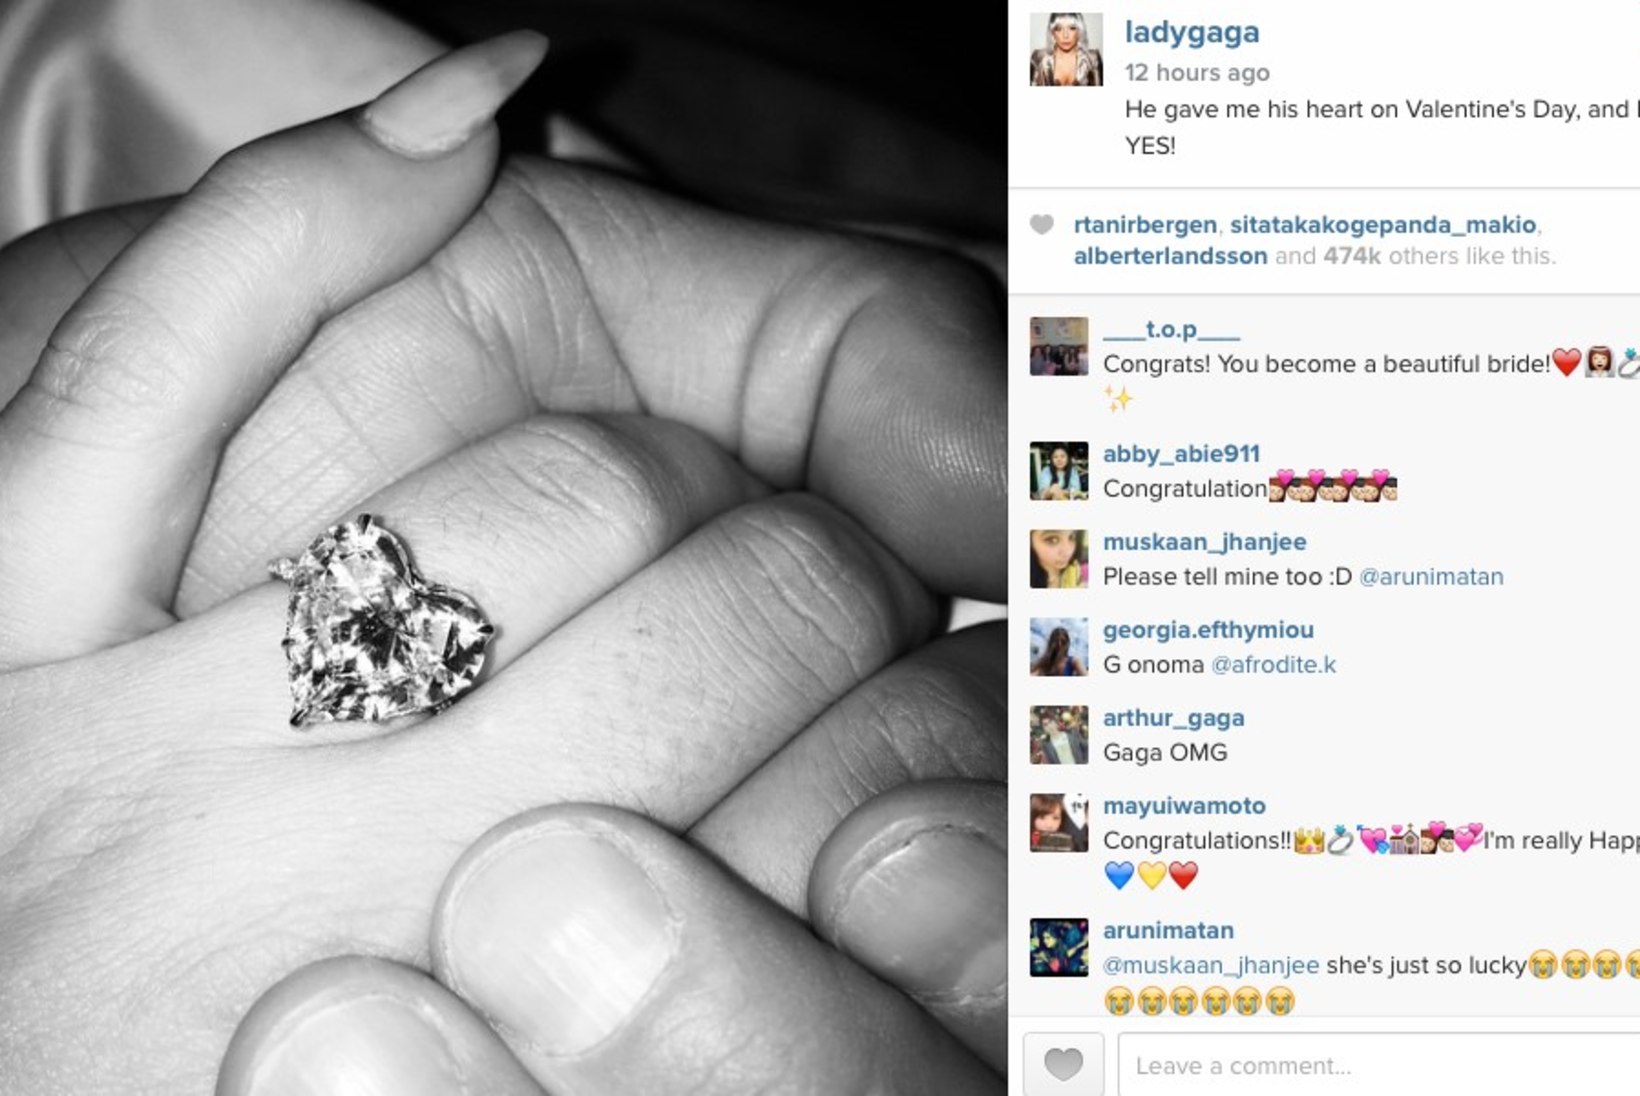 Lady Gaga on kihlatud! Vaata, mis sa kihlasõrmusest arvad!